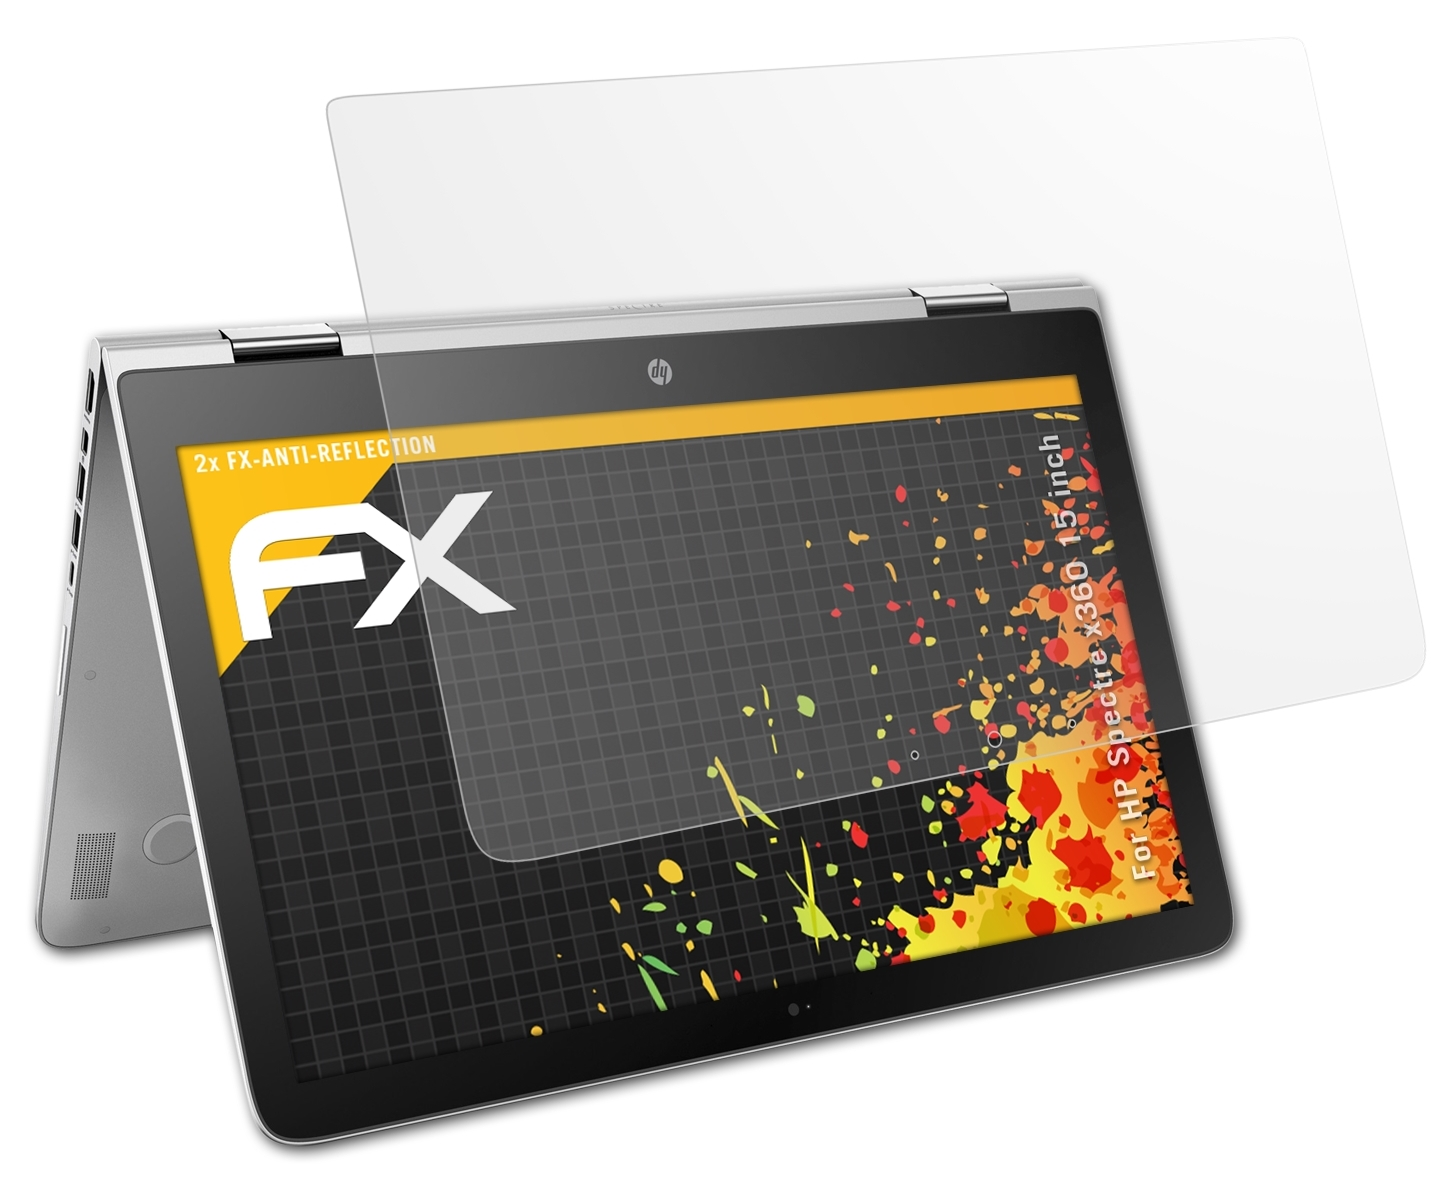 x360 ATFOLIX 2x FX-Antireflex inch)) (15 Spectre HP Displayschutz(für